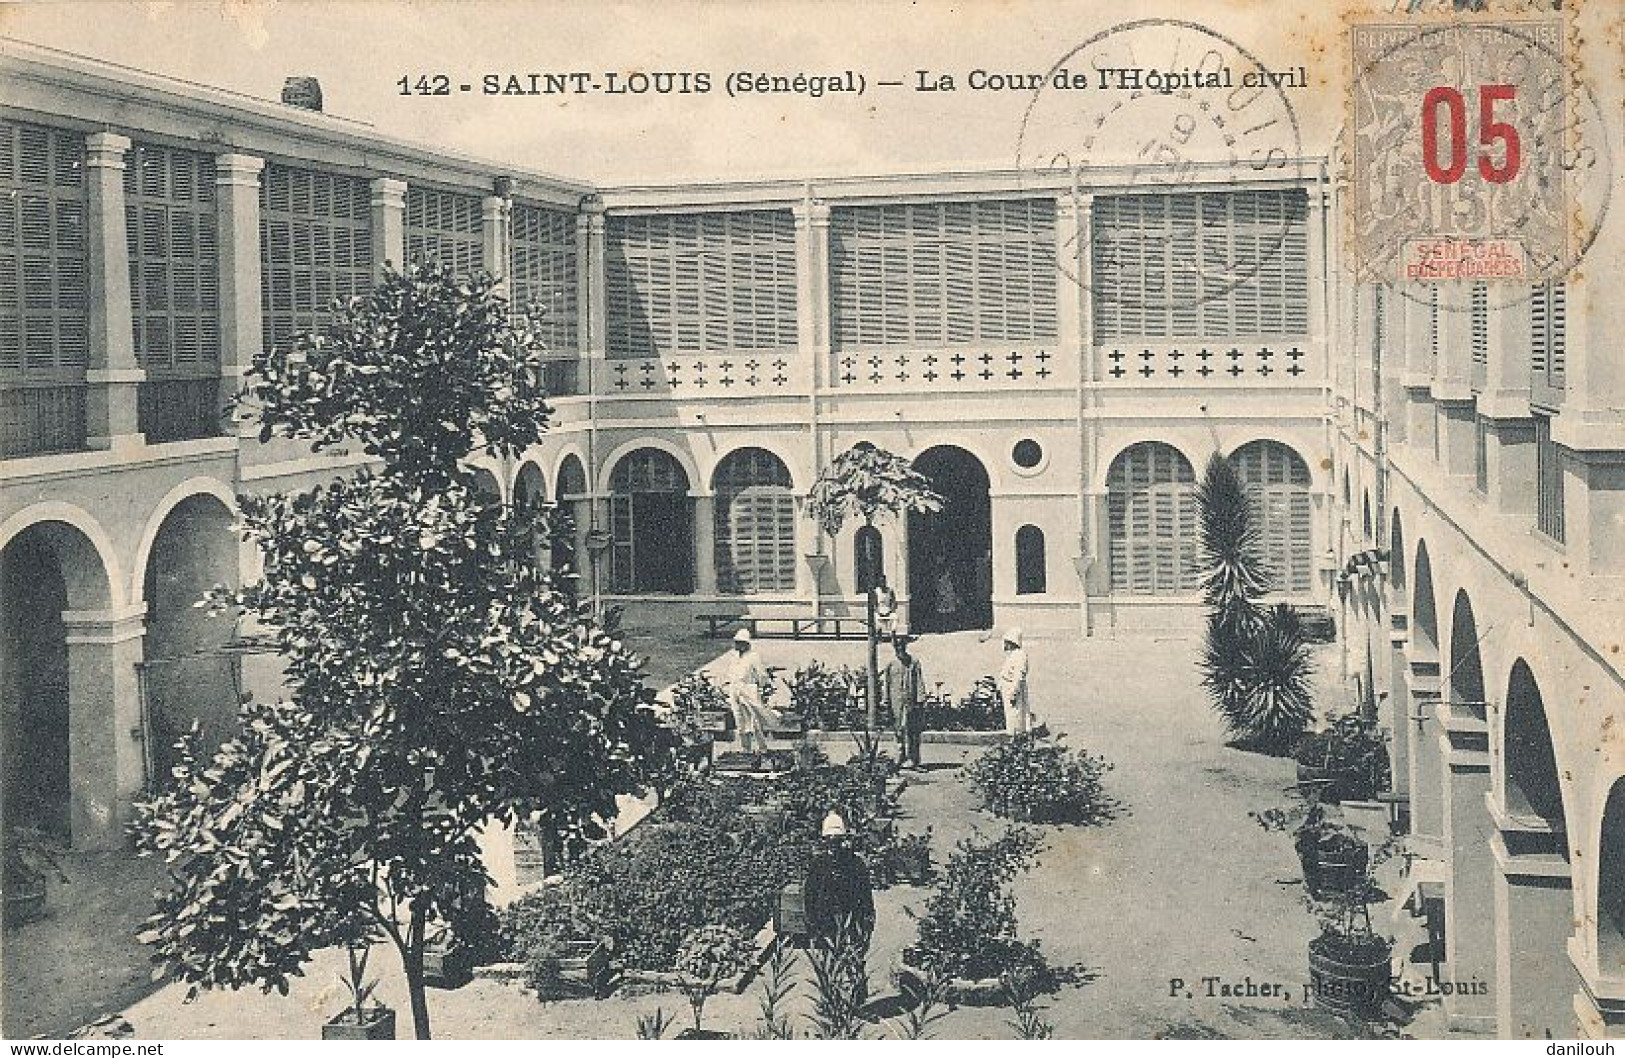 SENEGAL / SAINT LOUIS  La Cour De L'hopital Civil  142  Edit Tacher - Sénégal